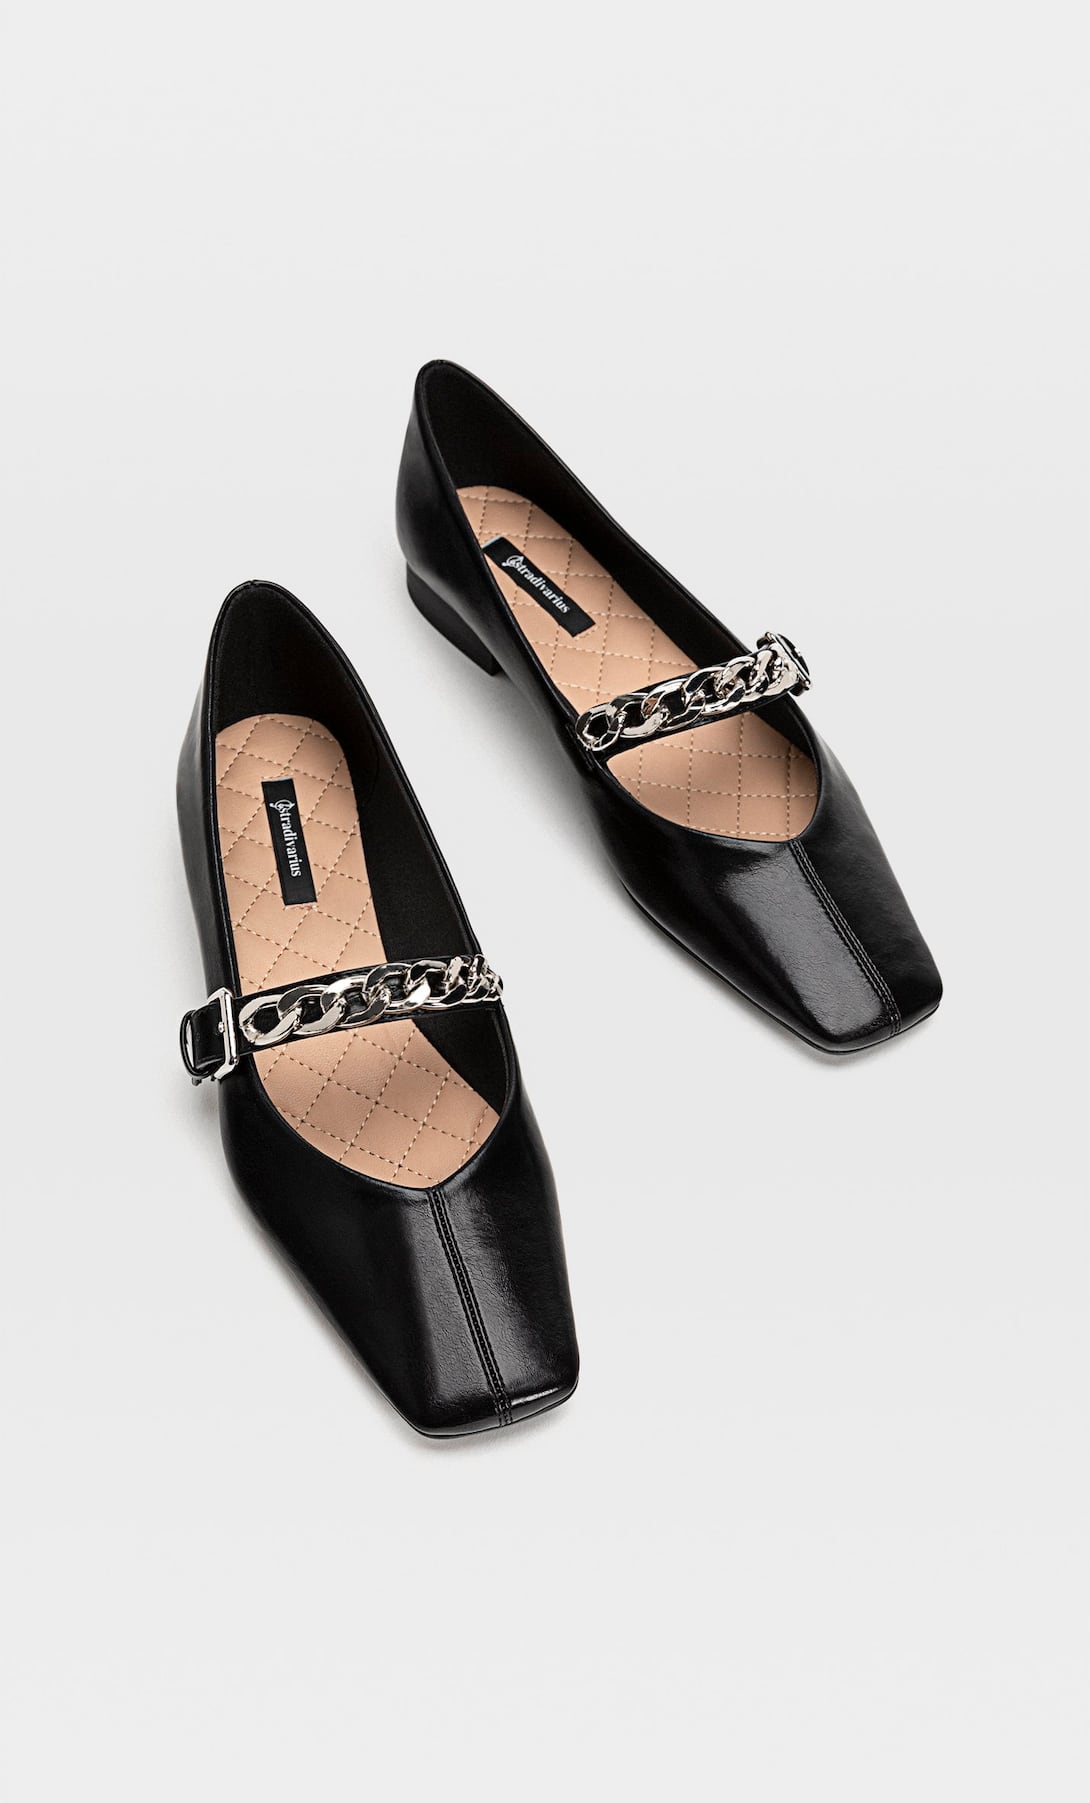 Zapatos T-Strap que Grace Kelly llevaba vuelven a ser tendencia